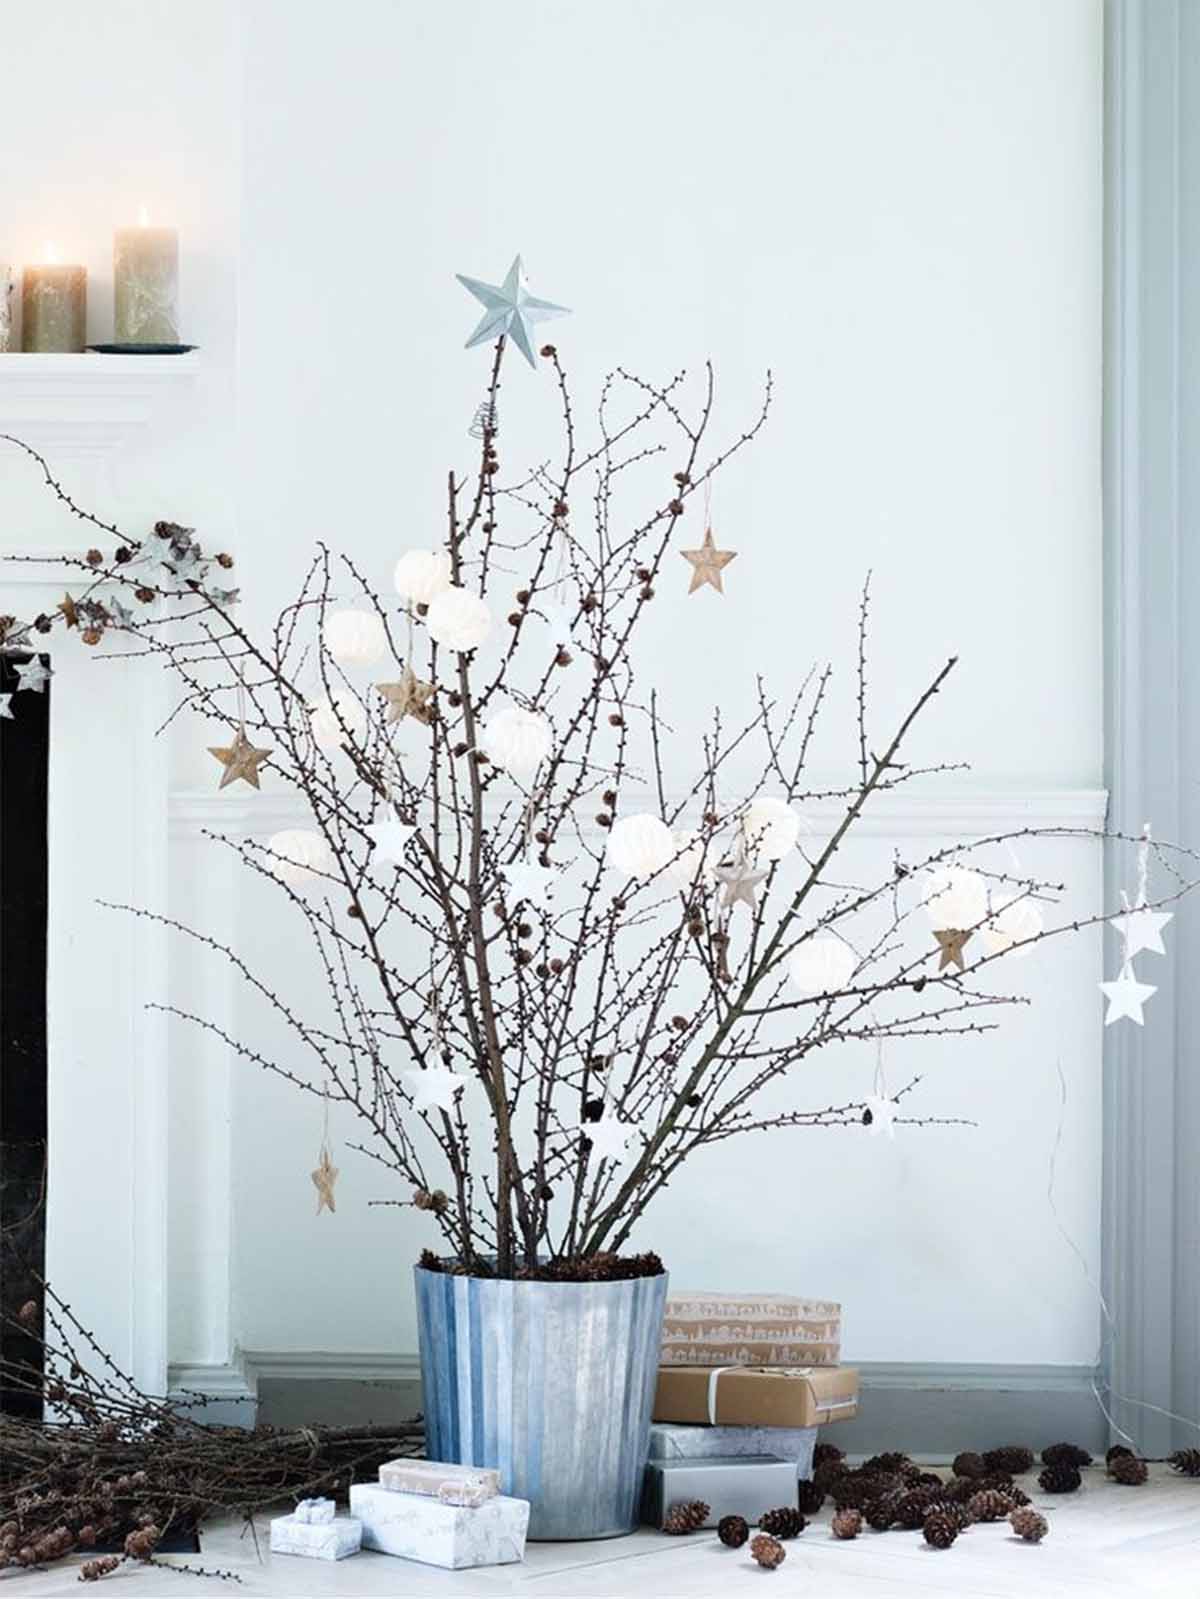 تزیین کریسمس در خانه با گلدانی از شاخه های خشک شده و میوه های درخت کاج